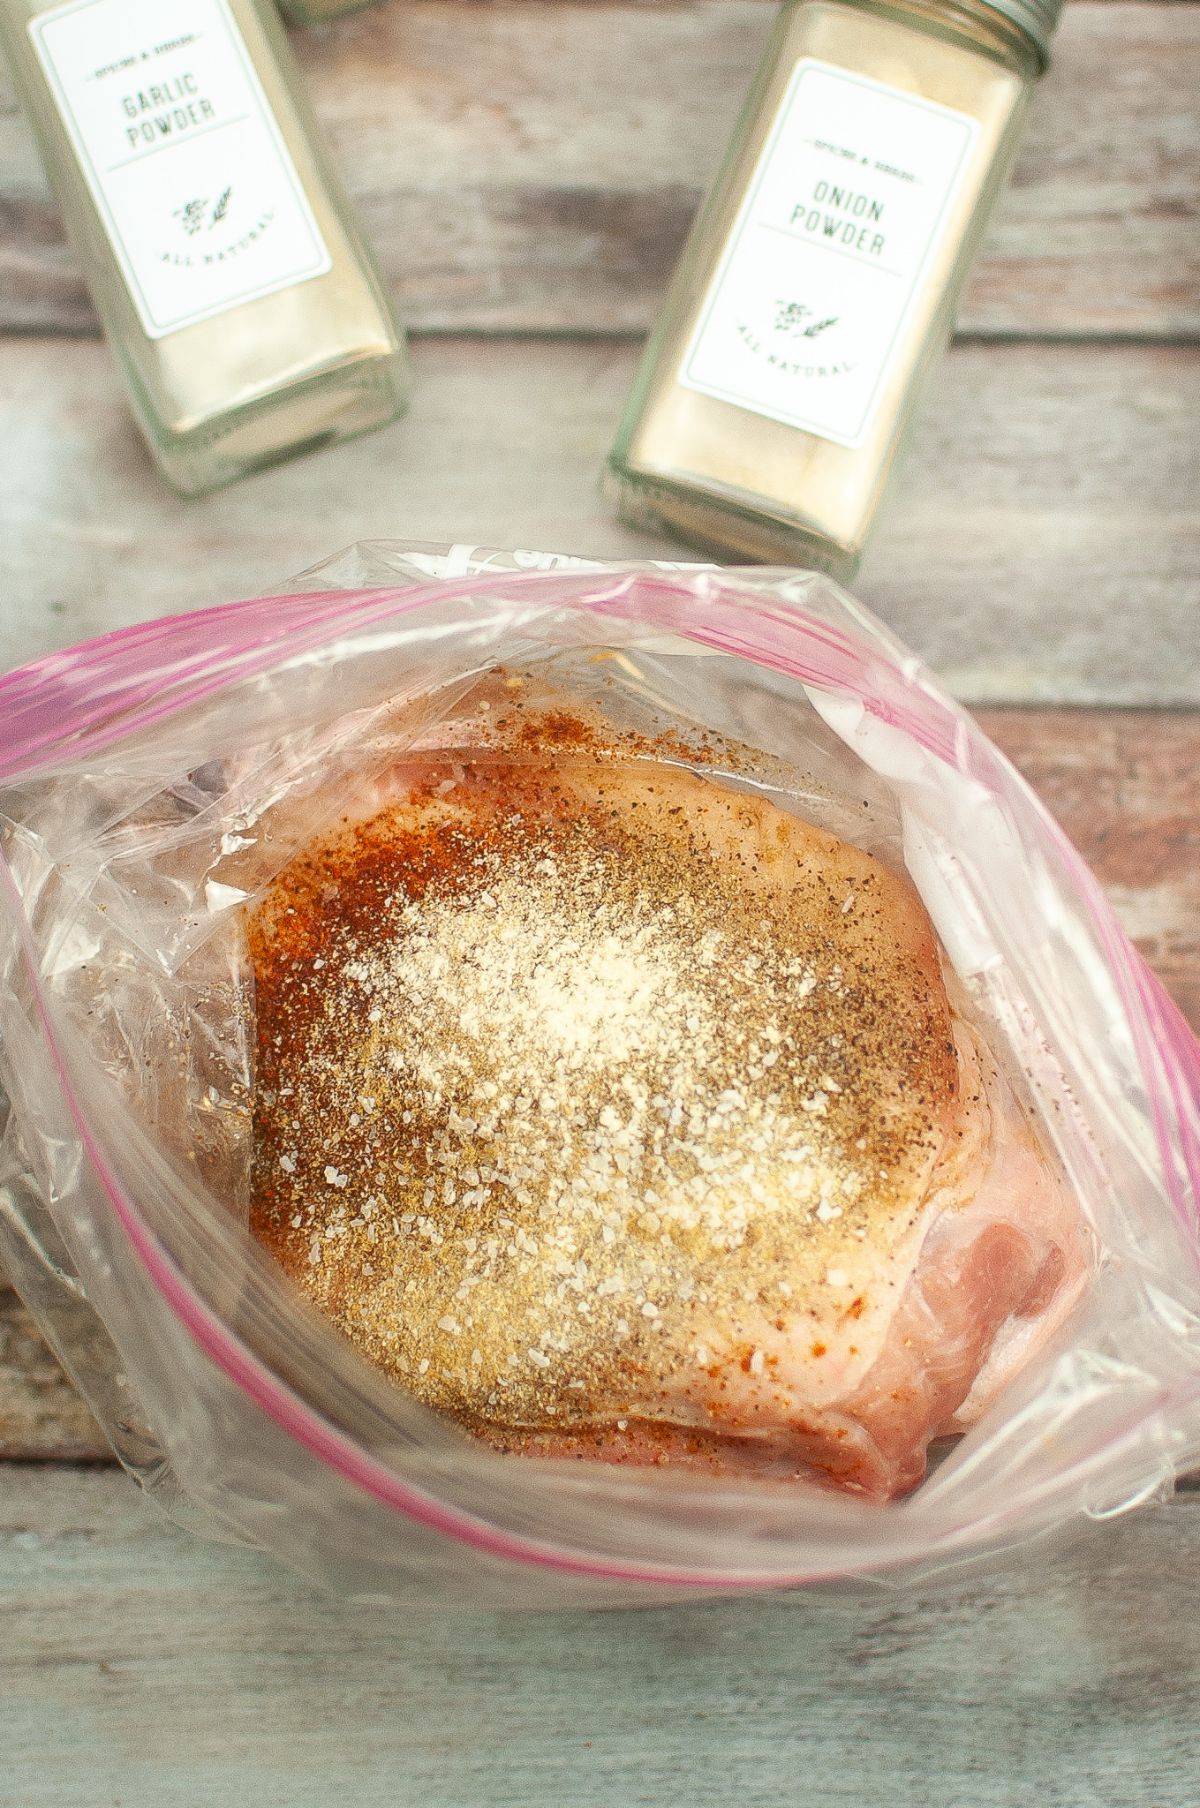 Pork with seasoning inside the zip lock bag.